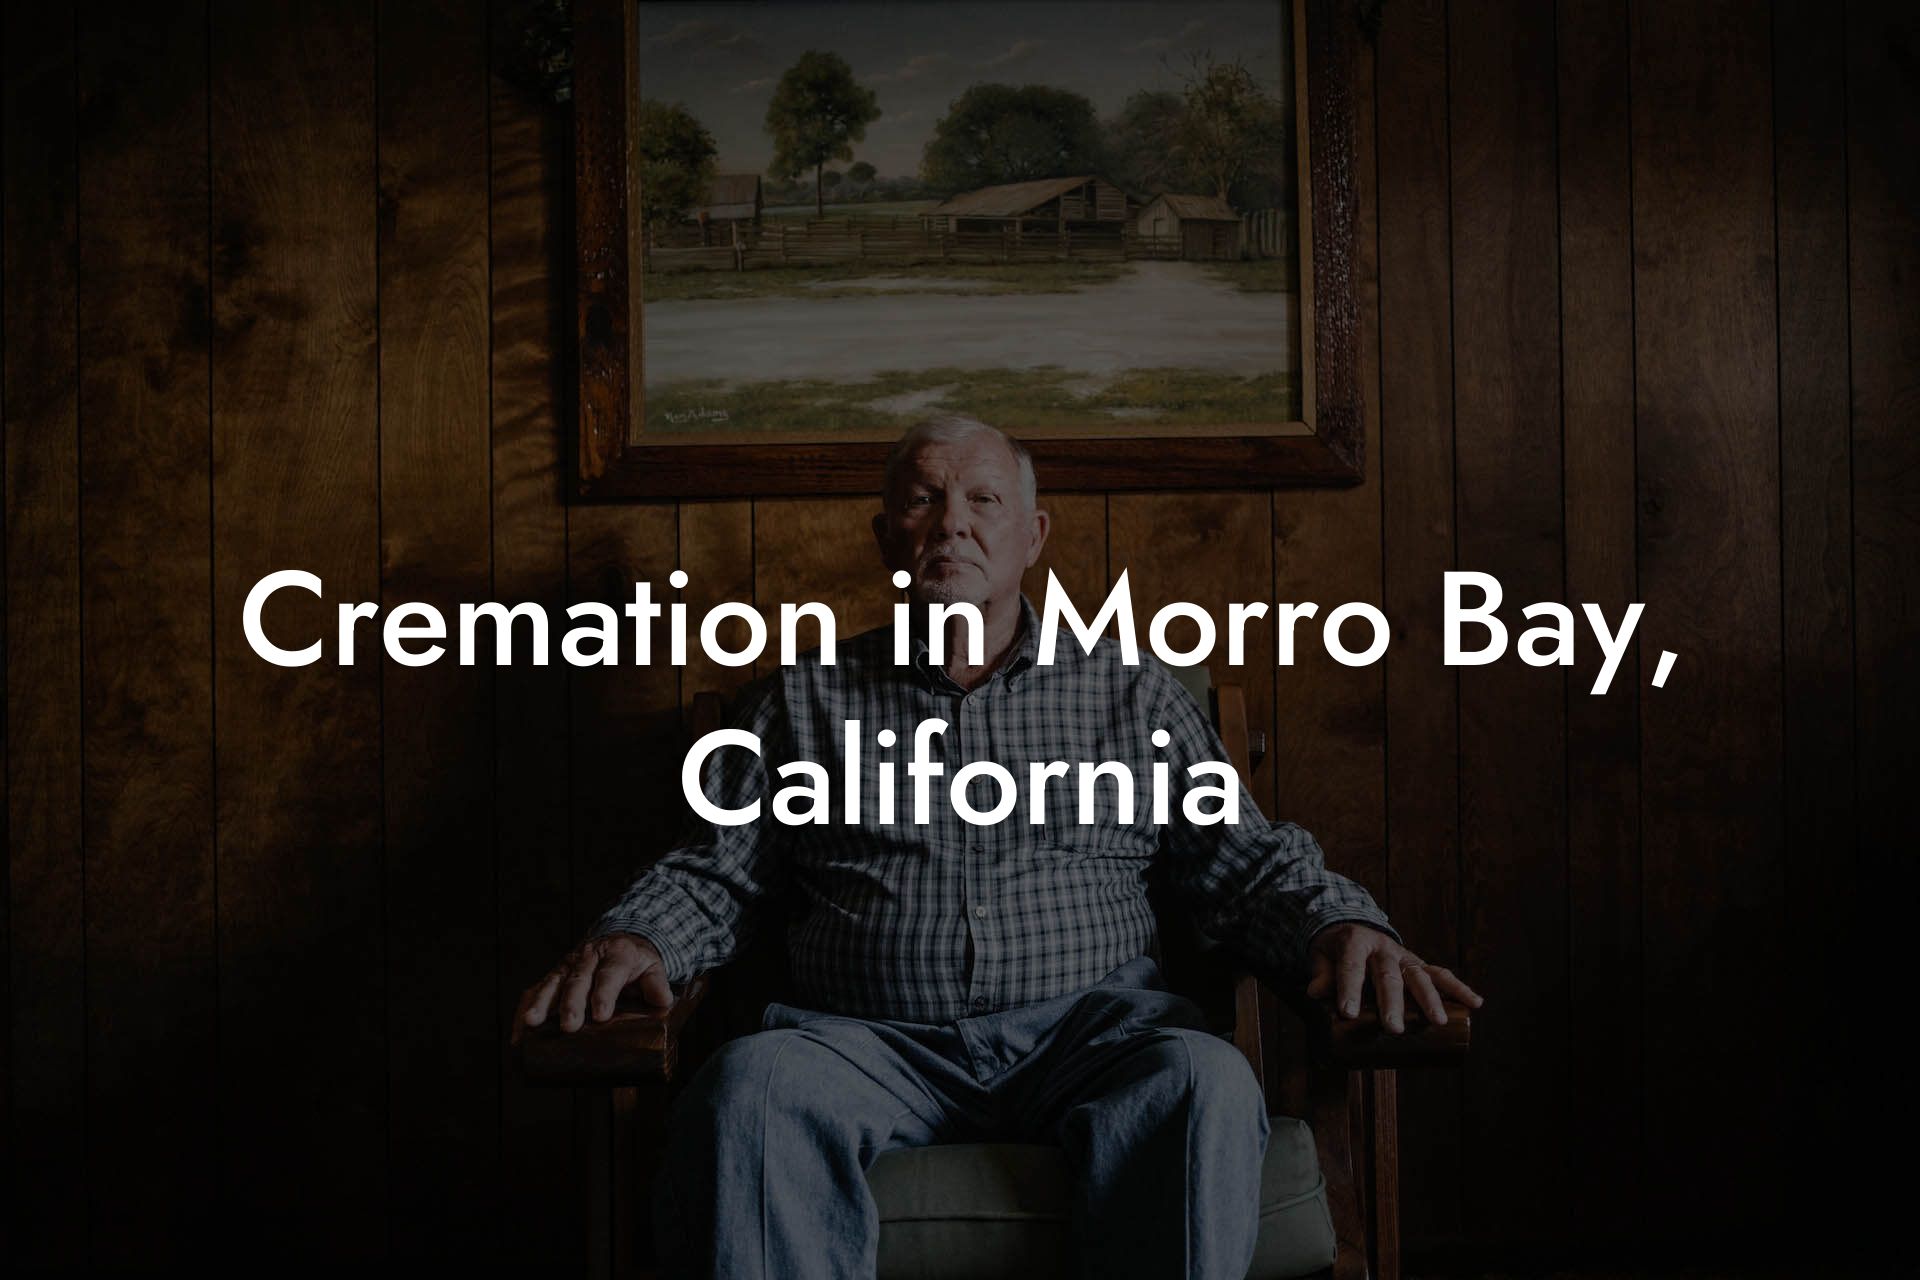 Cremation in Morro Bay, California